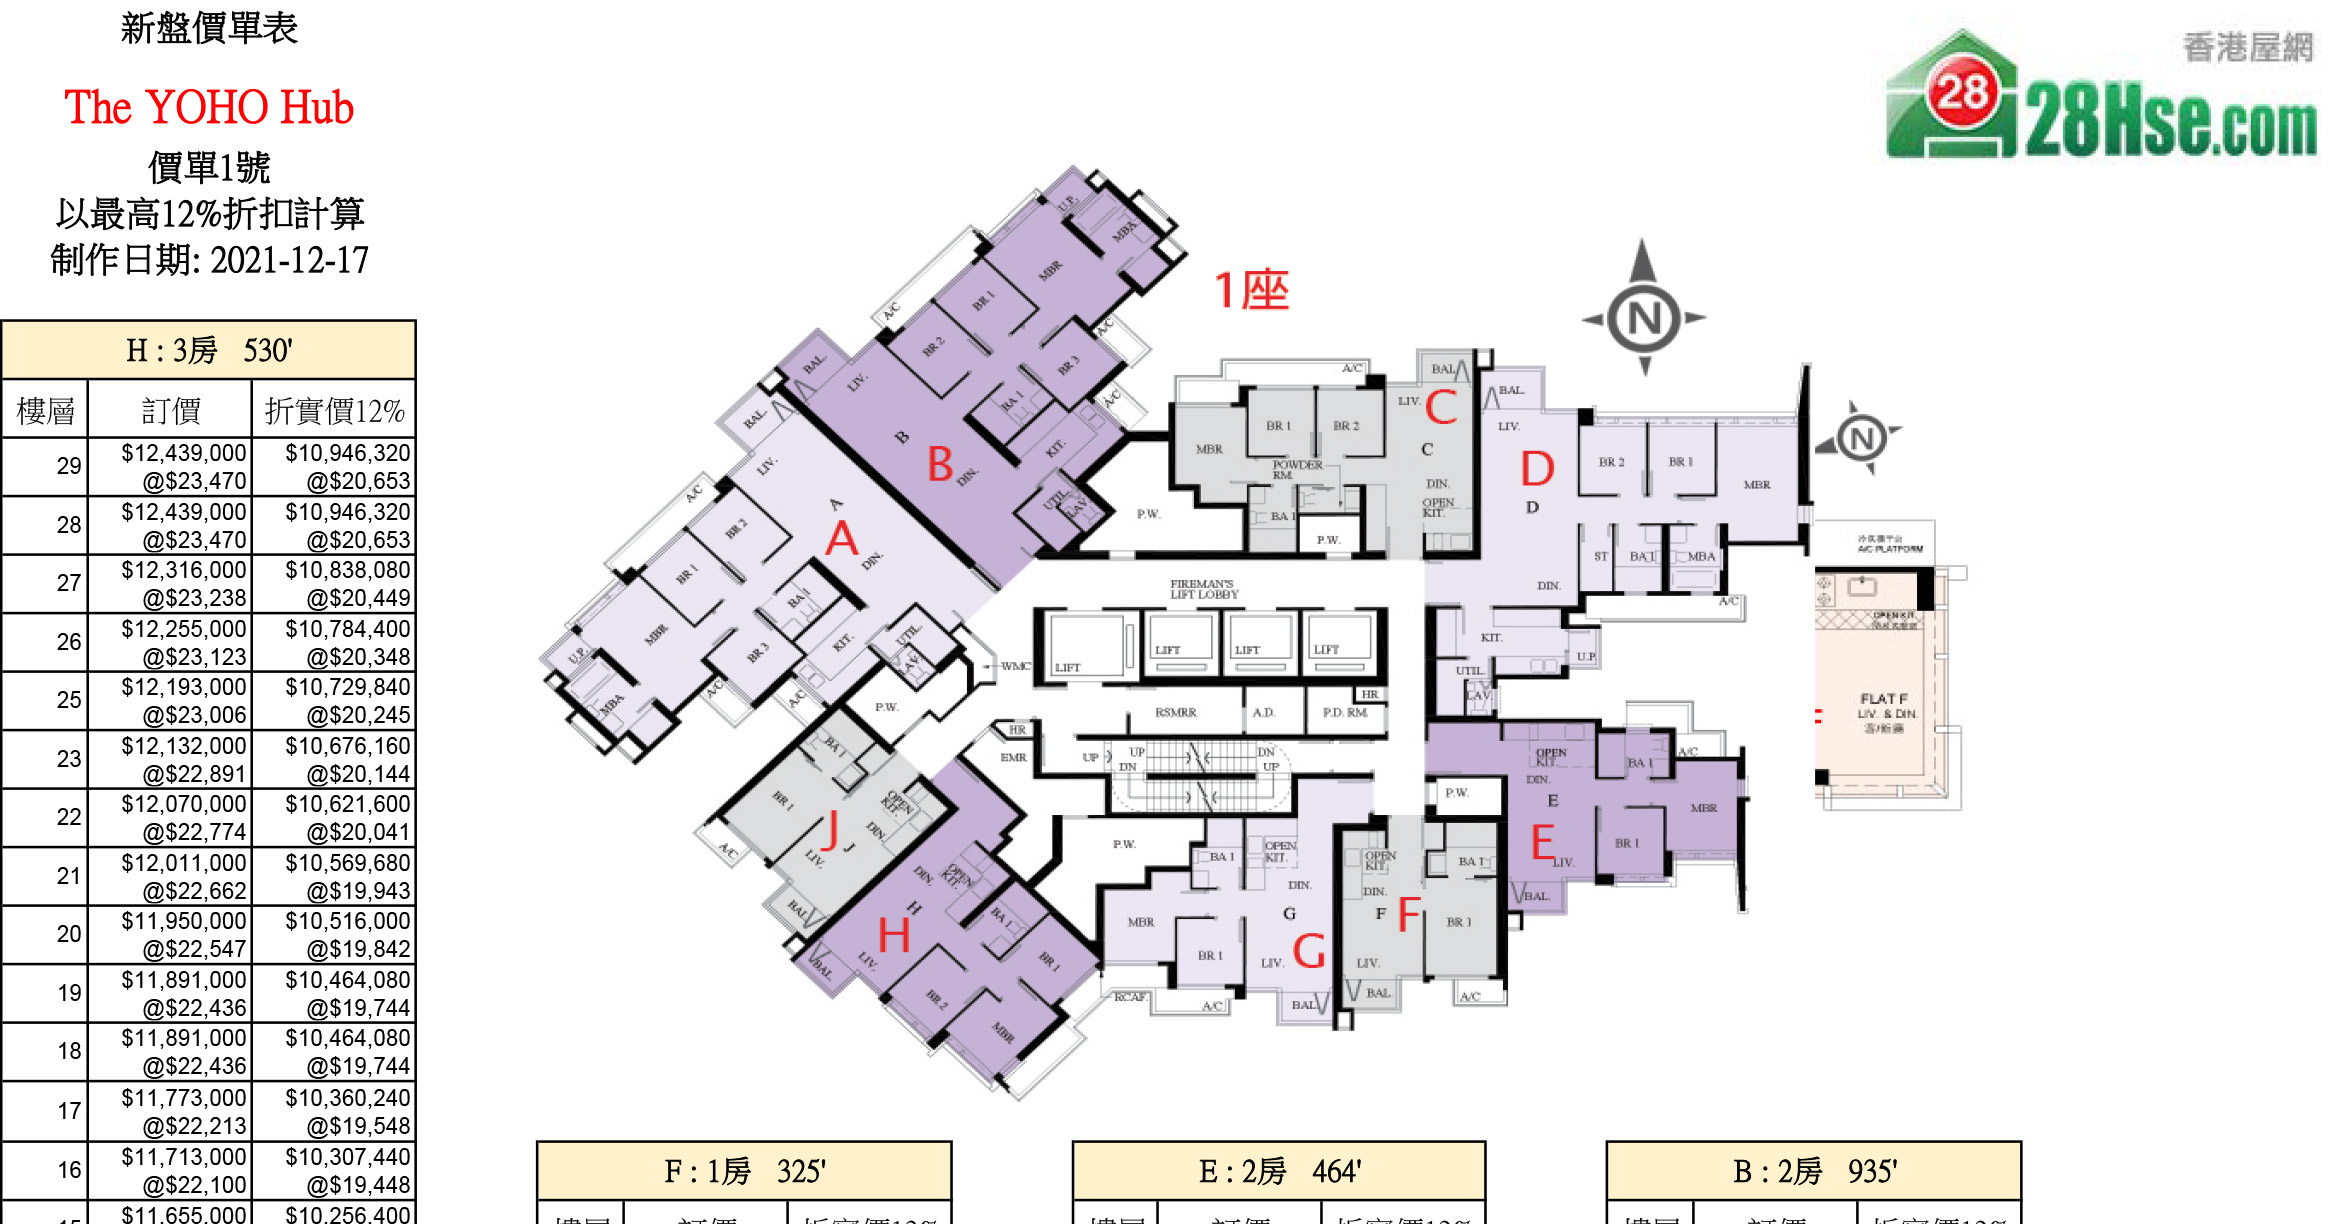 The YOHO Hub  Floorplan Pricelist